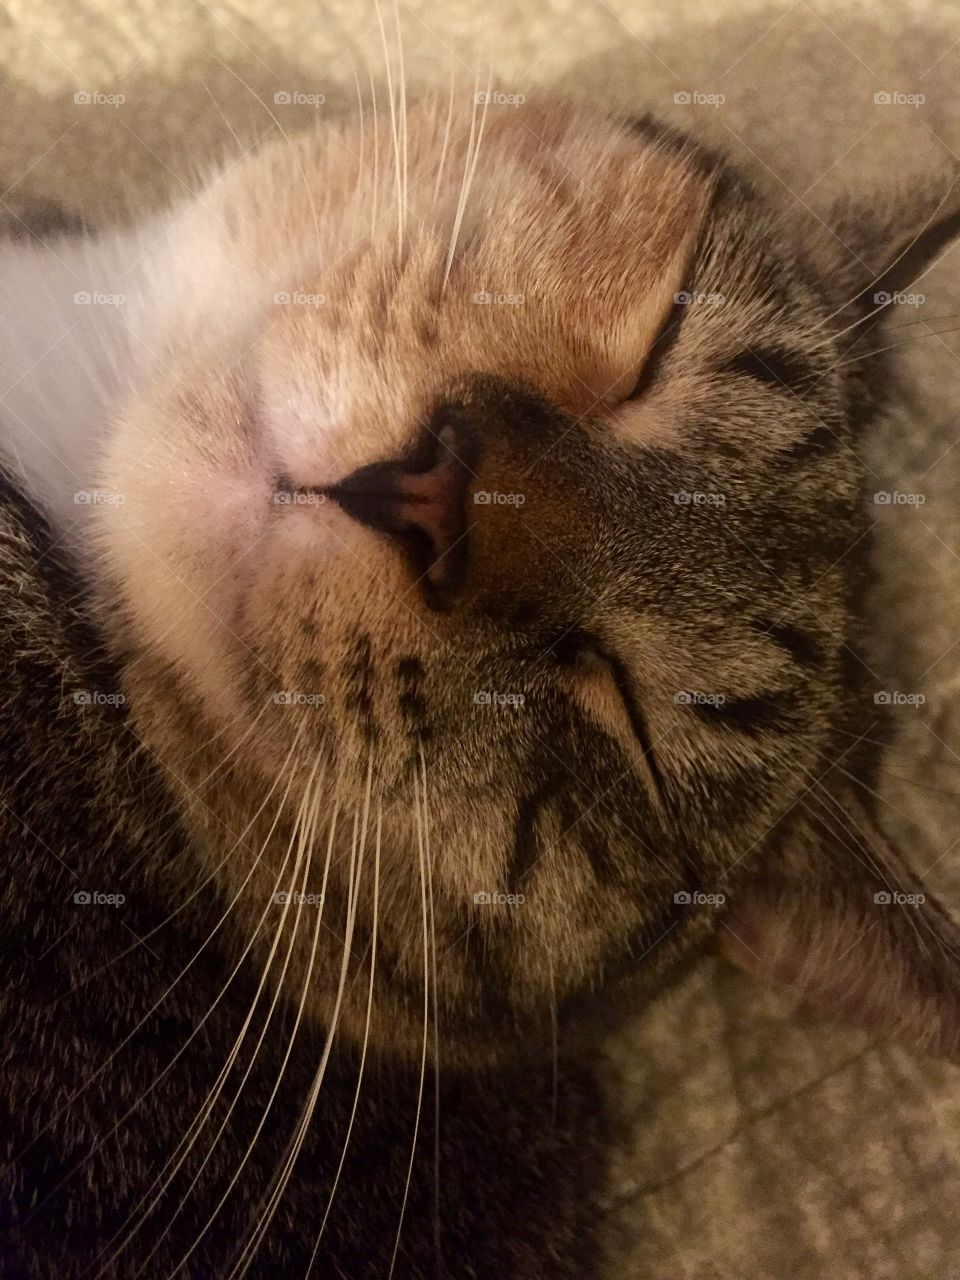 Smiling calico cat
